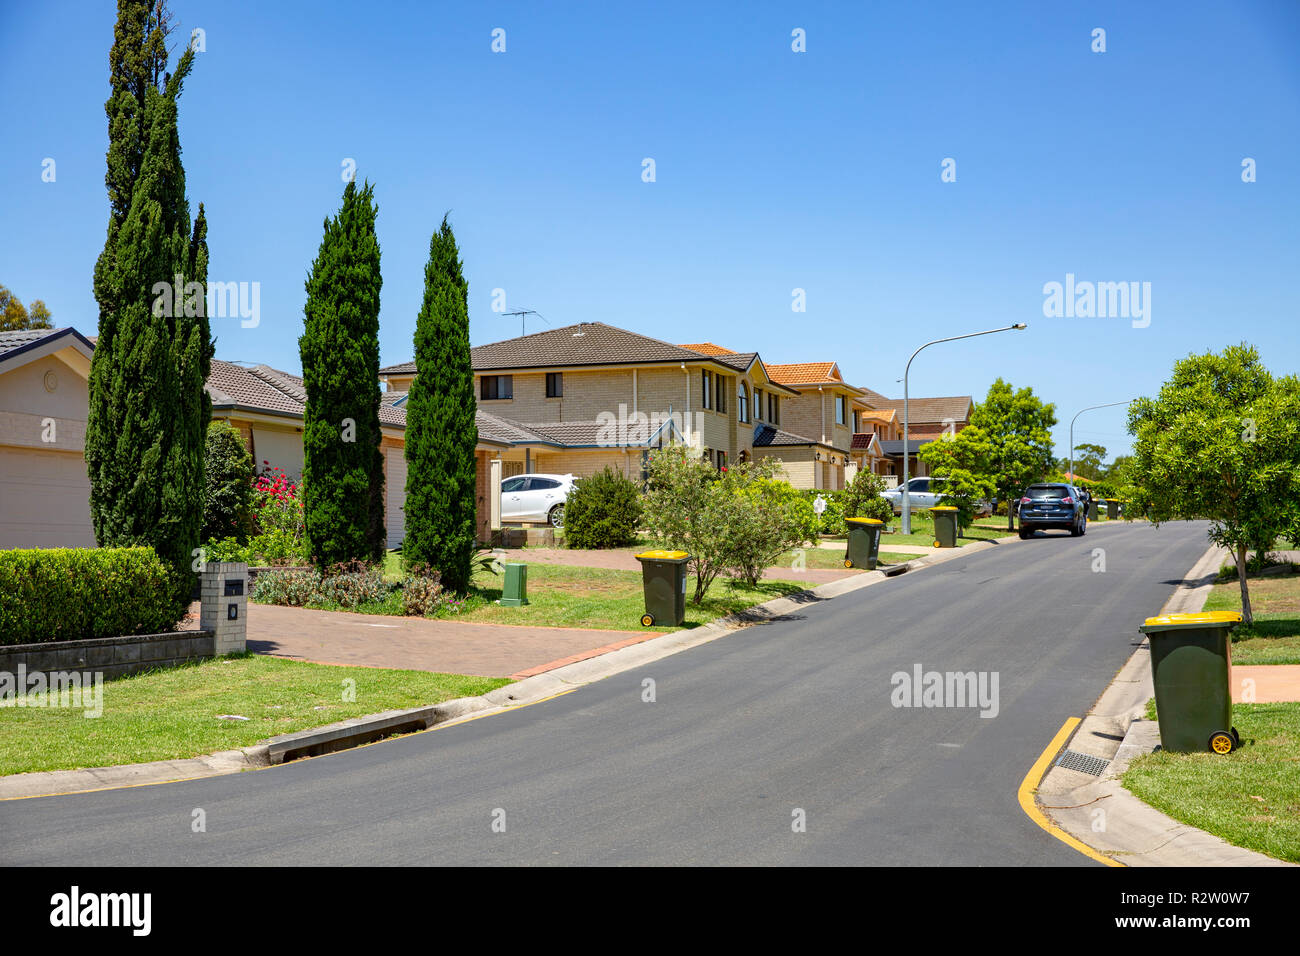 Casa típica australiana fotografías e imágenes de alta resolución - Alamy